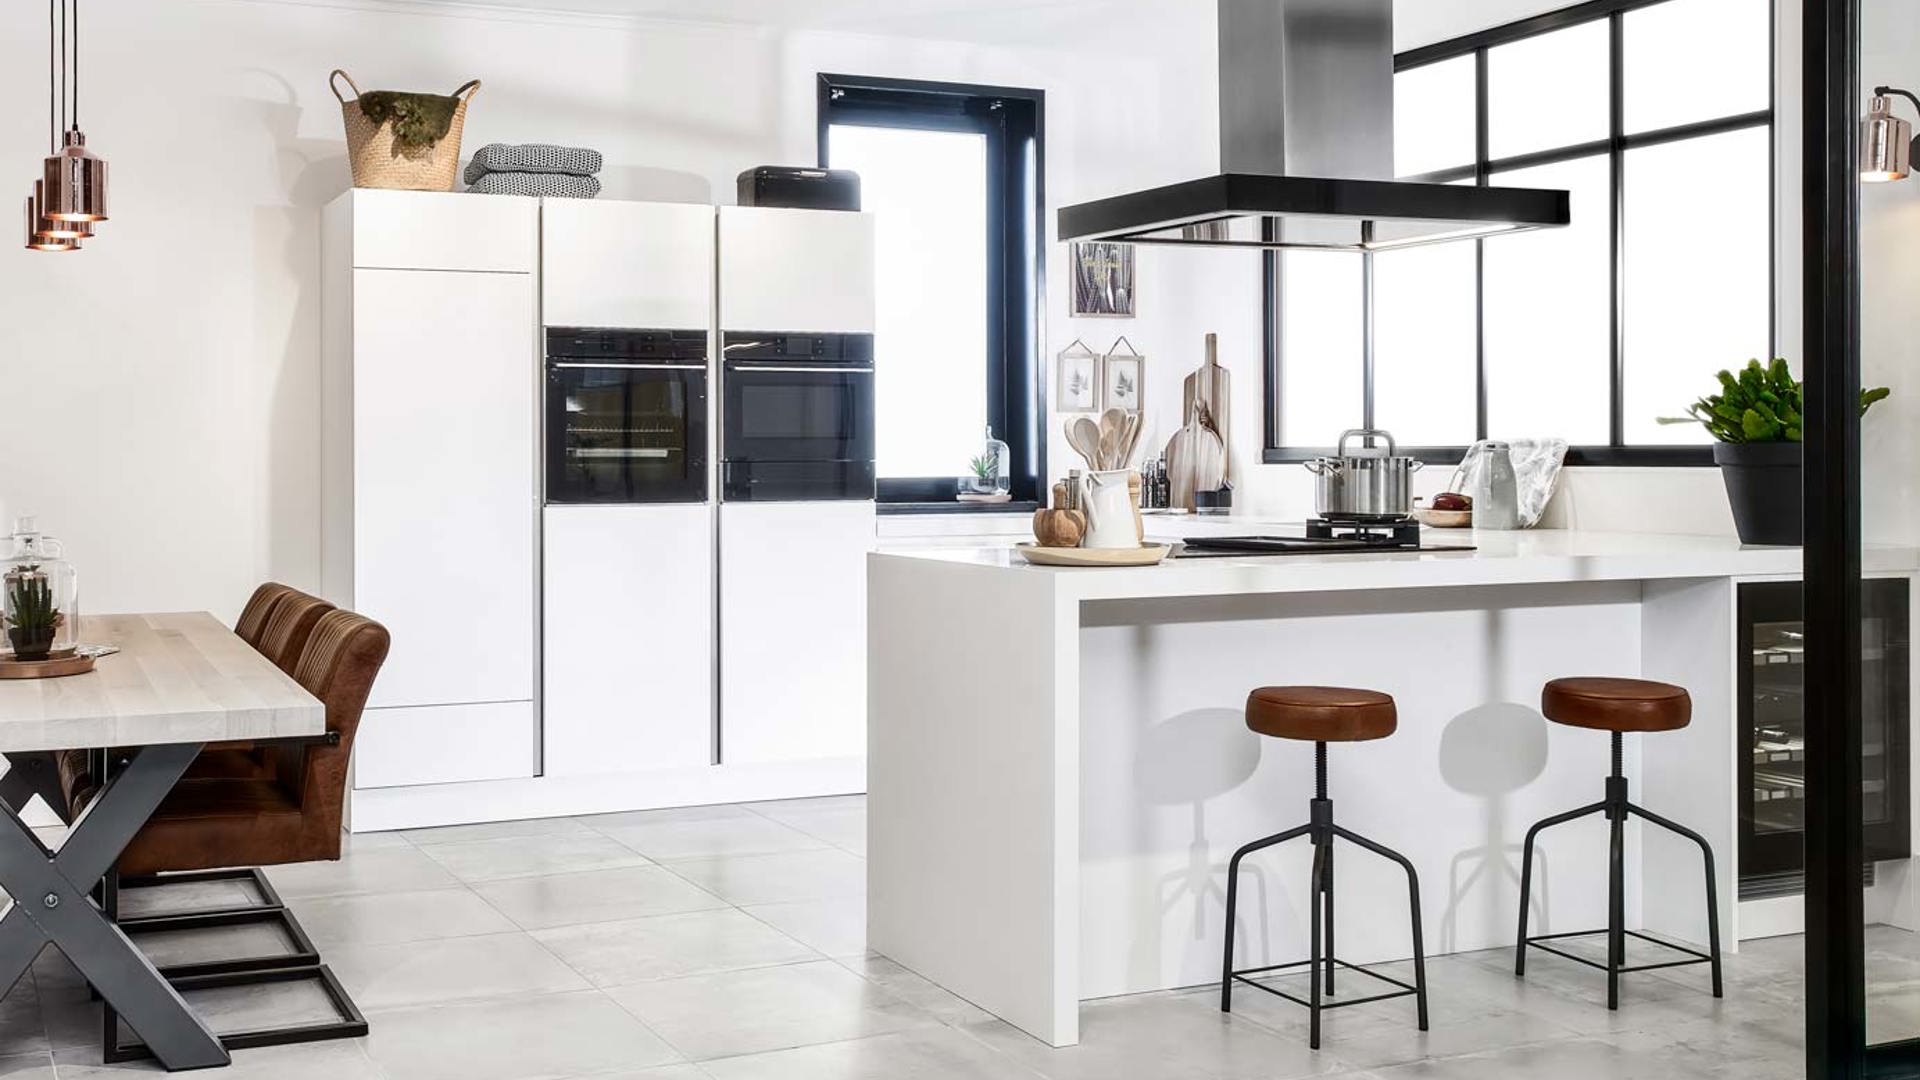 Luxe moderne keuken met greeploze witte fronten